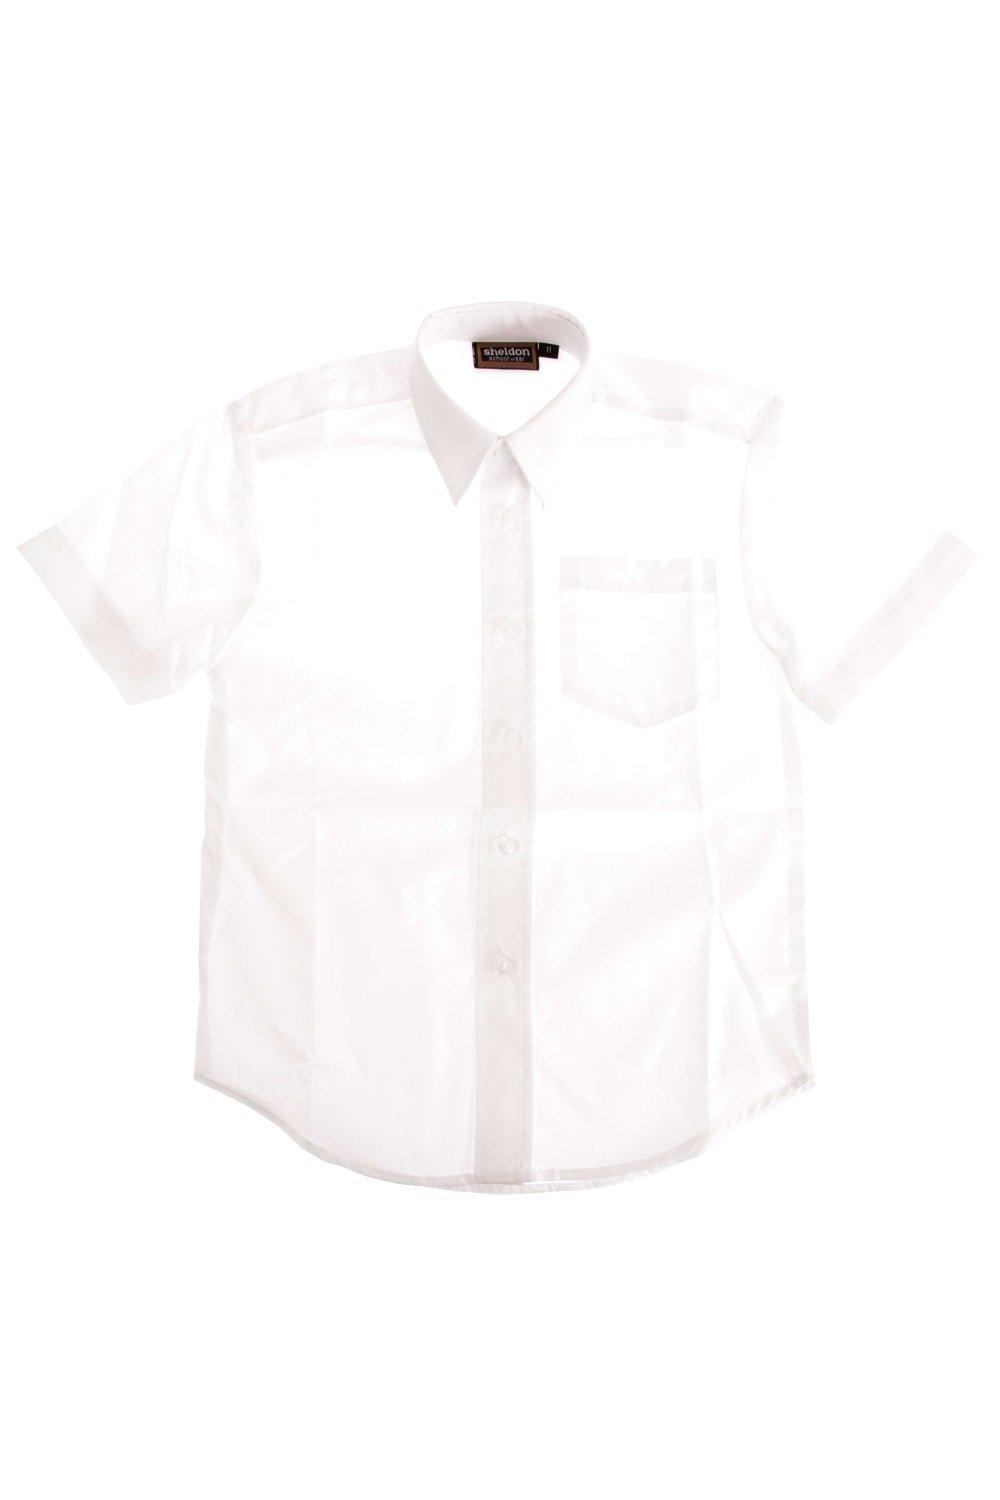 Школьная рубашка с короткими рукавами Universal Textiles, белый 1 шт скребок для шпатлевки 2 дюйма 3 дюйма 4 дюйма 5 дюймов 6 дюймов